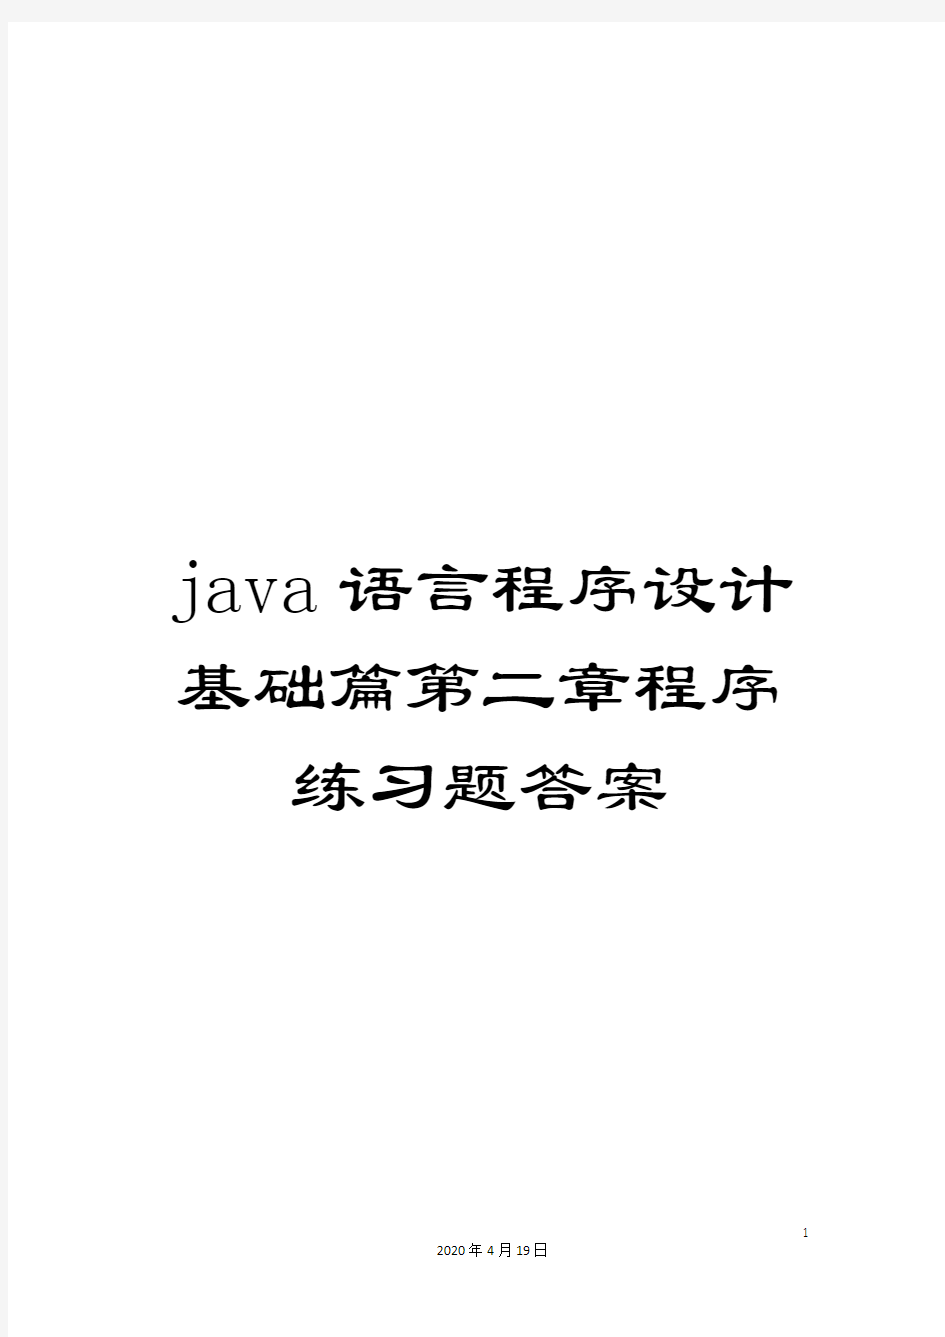 java语言程序设计基础篇第二章程序练习题答案